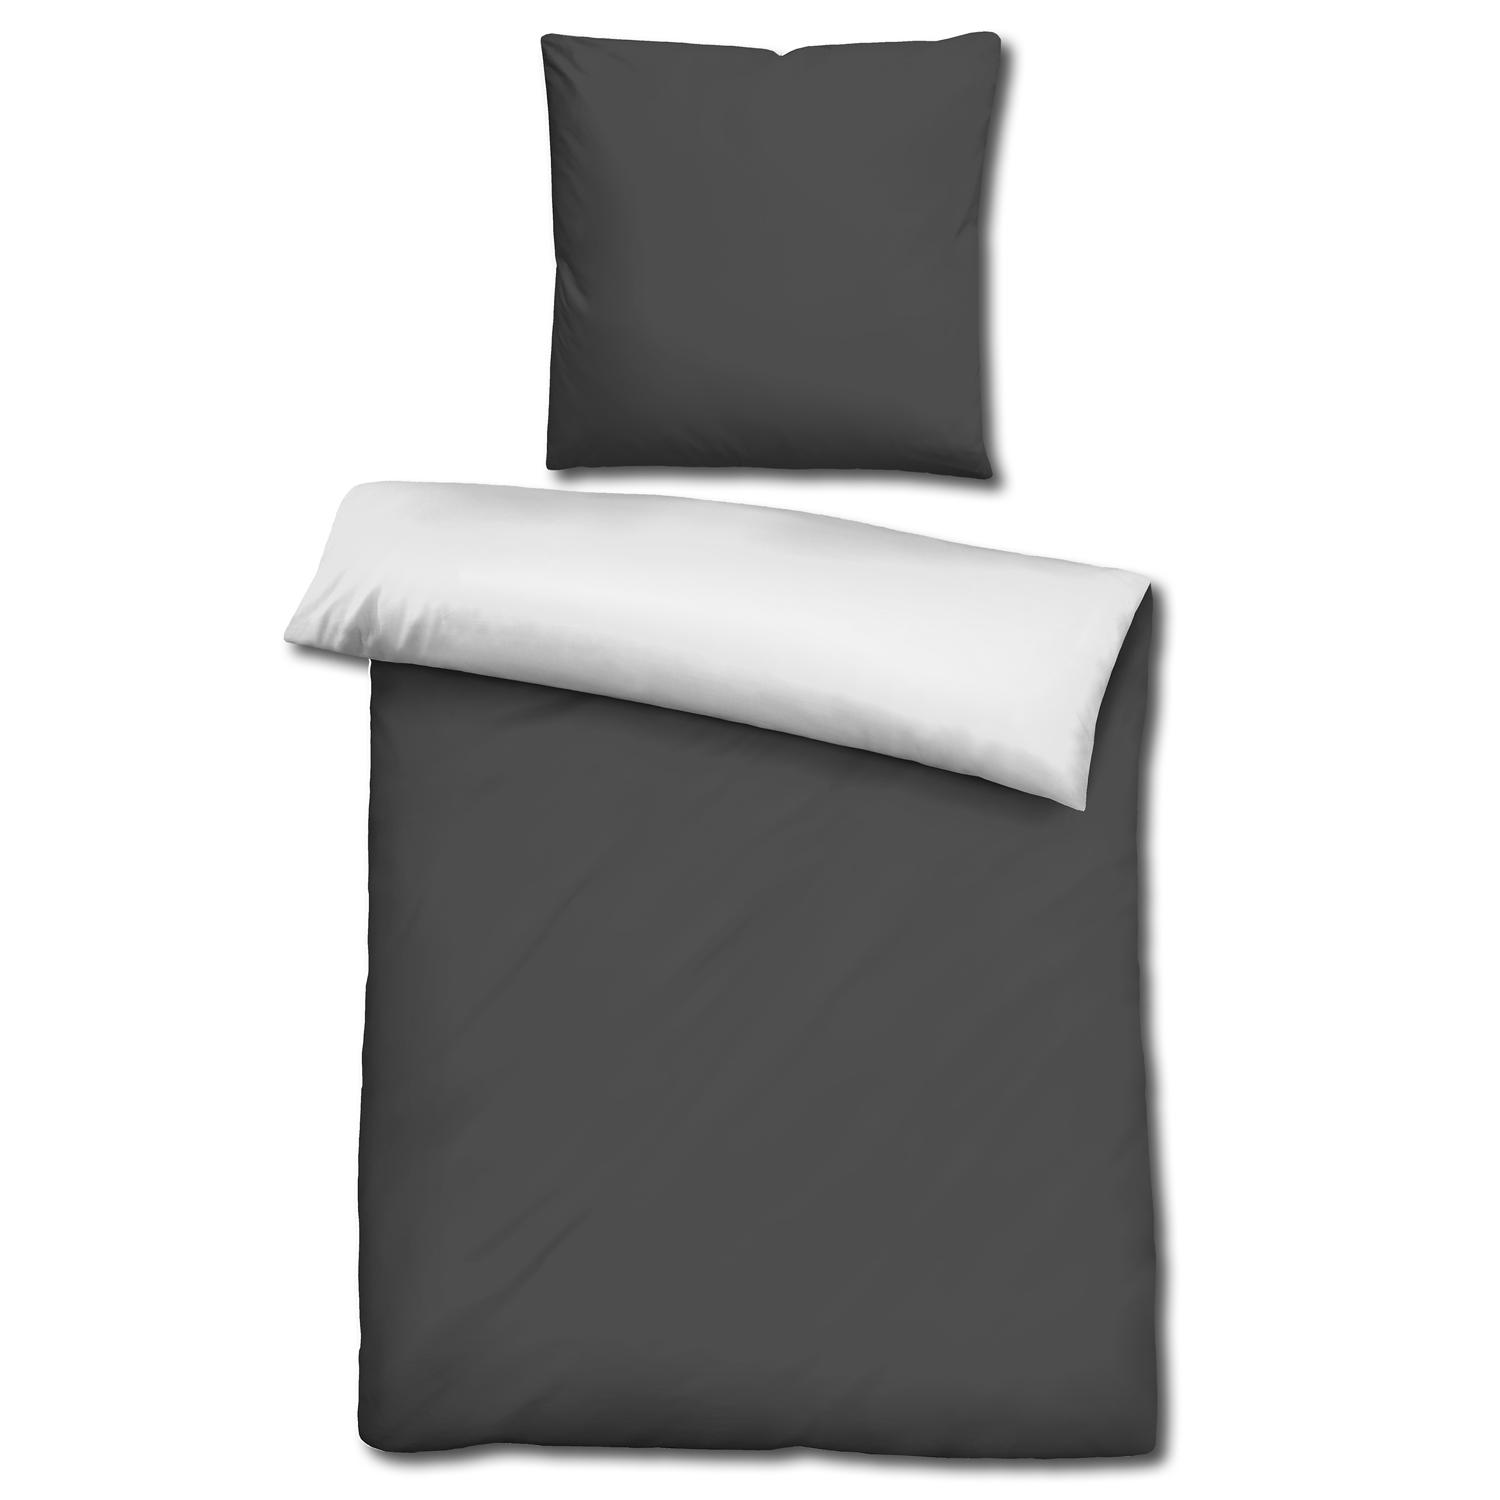 CloudComfort Basic oboustranné ložní prádlo černá/bílá 135 x 200 + 80 x 80 cm